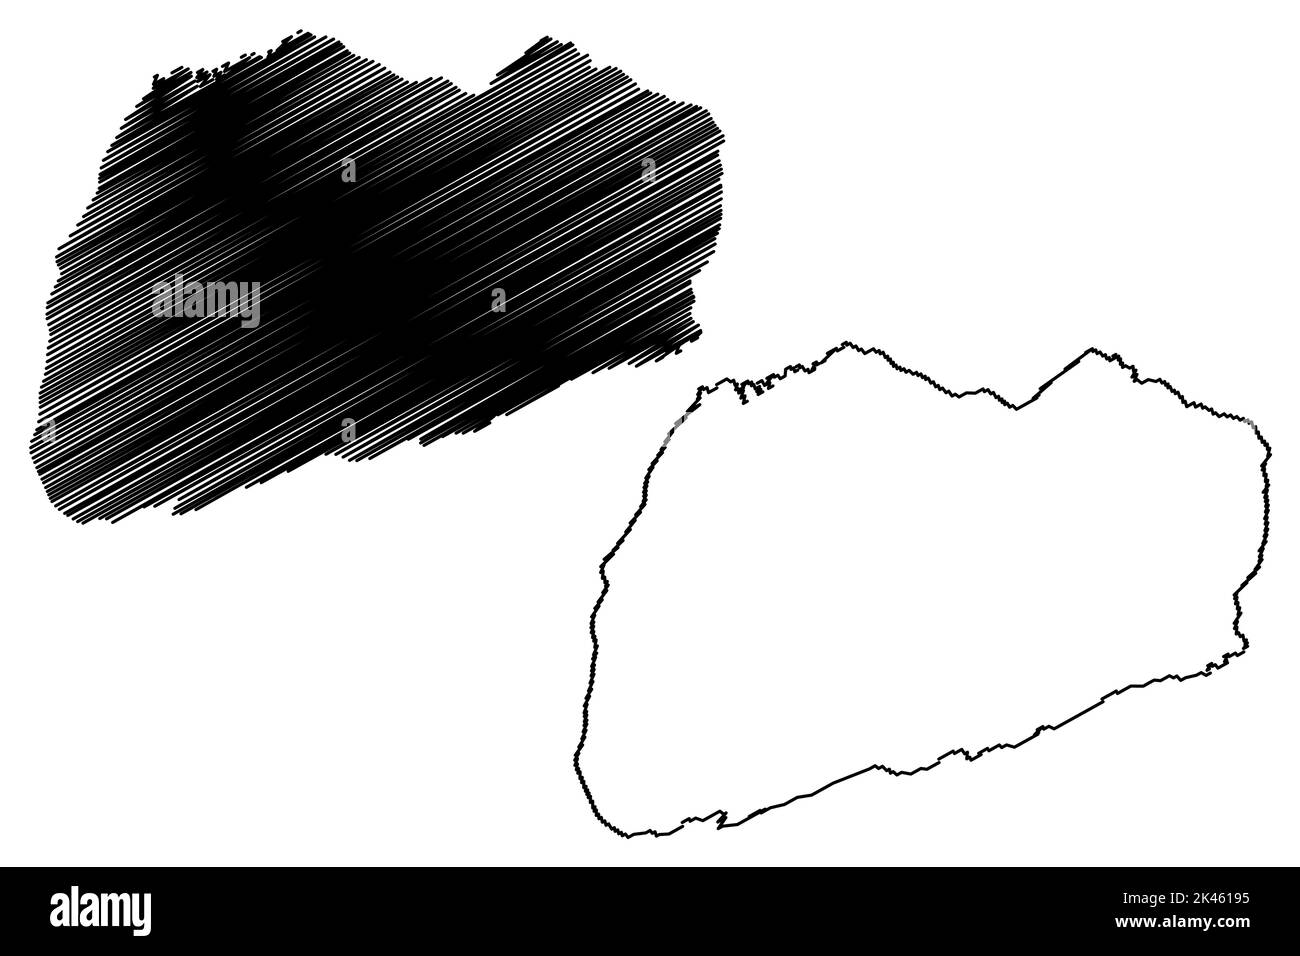 North Seymour island (Republic of Ecuador, Pacific Ocean, Latin or South America, Galapagos Islands, Archipielago de Colon) map vector illustration, s Stock Vector